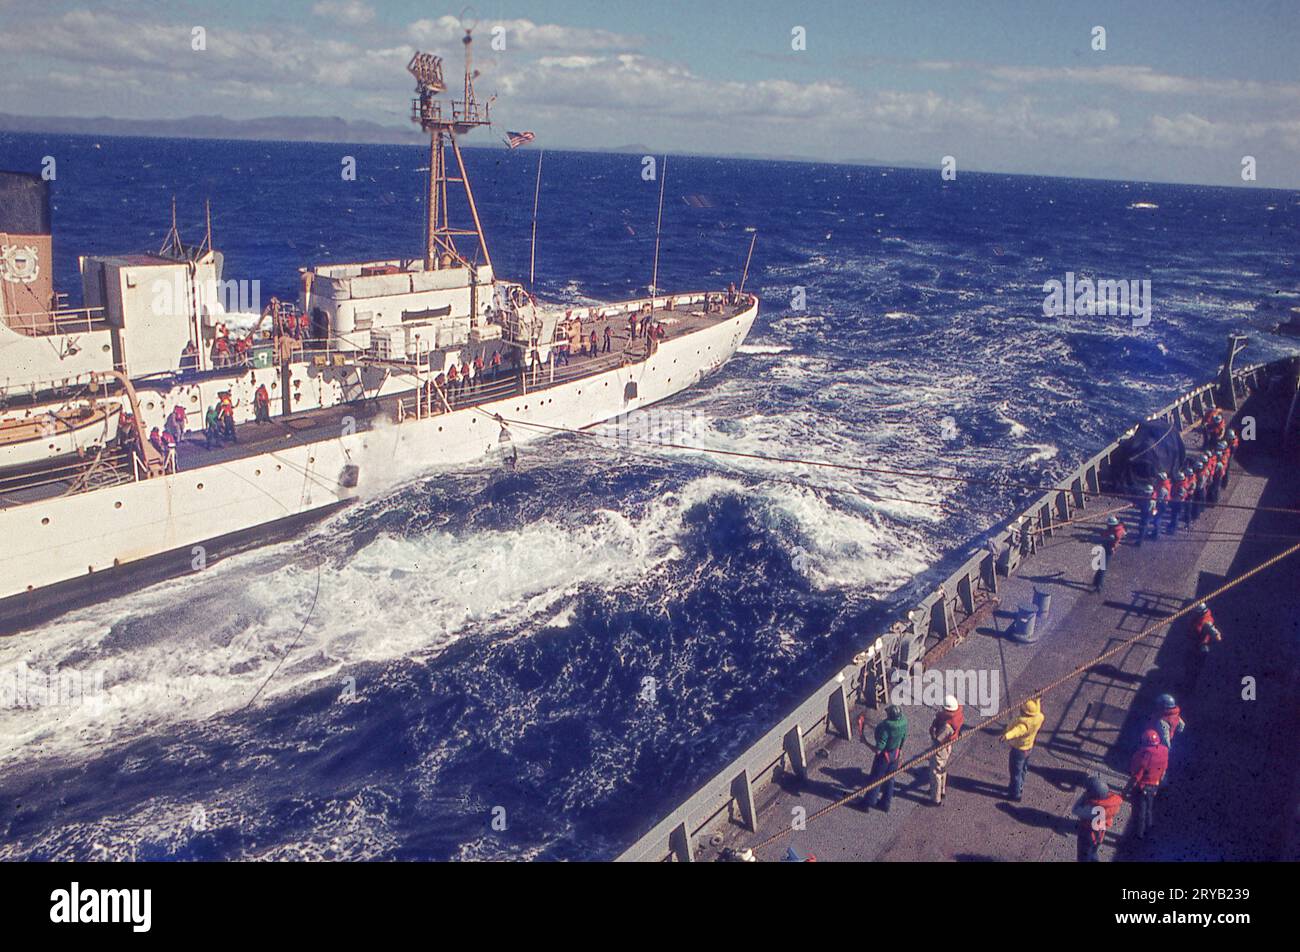 Un navire de la Garde côtière et un navire de la Marine, chacun en mouvement, font un exercice de transfert d'un passager d'un navire à un autre. Un mannequin est utilisé à la place pour la perceuse. Cette photo de 1971 a été prise depuis l'USS Compass Island, un navire de recherche. Banque D'Images